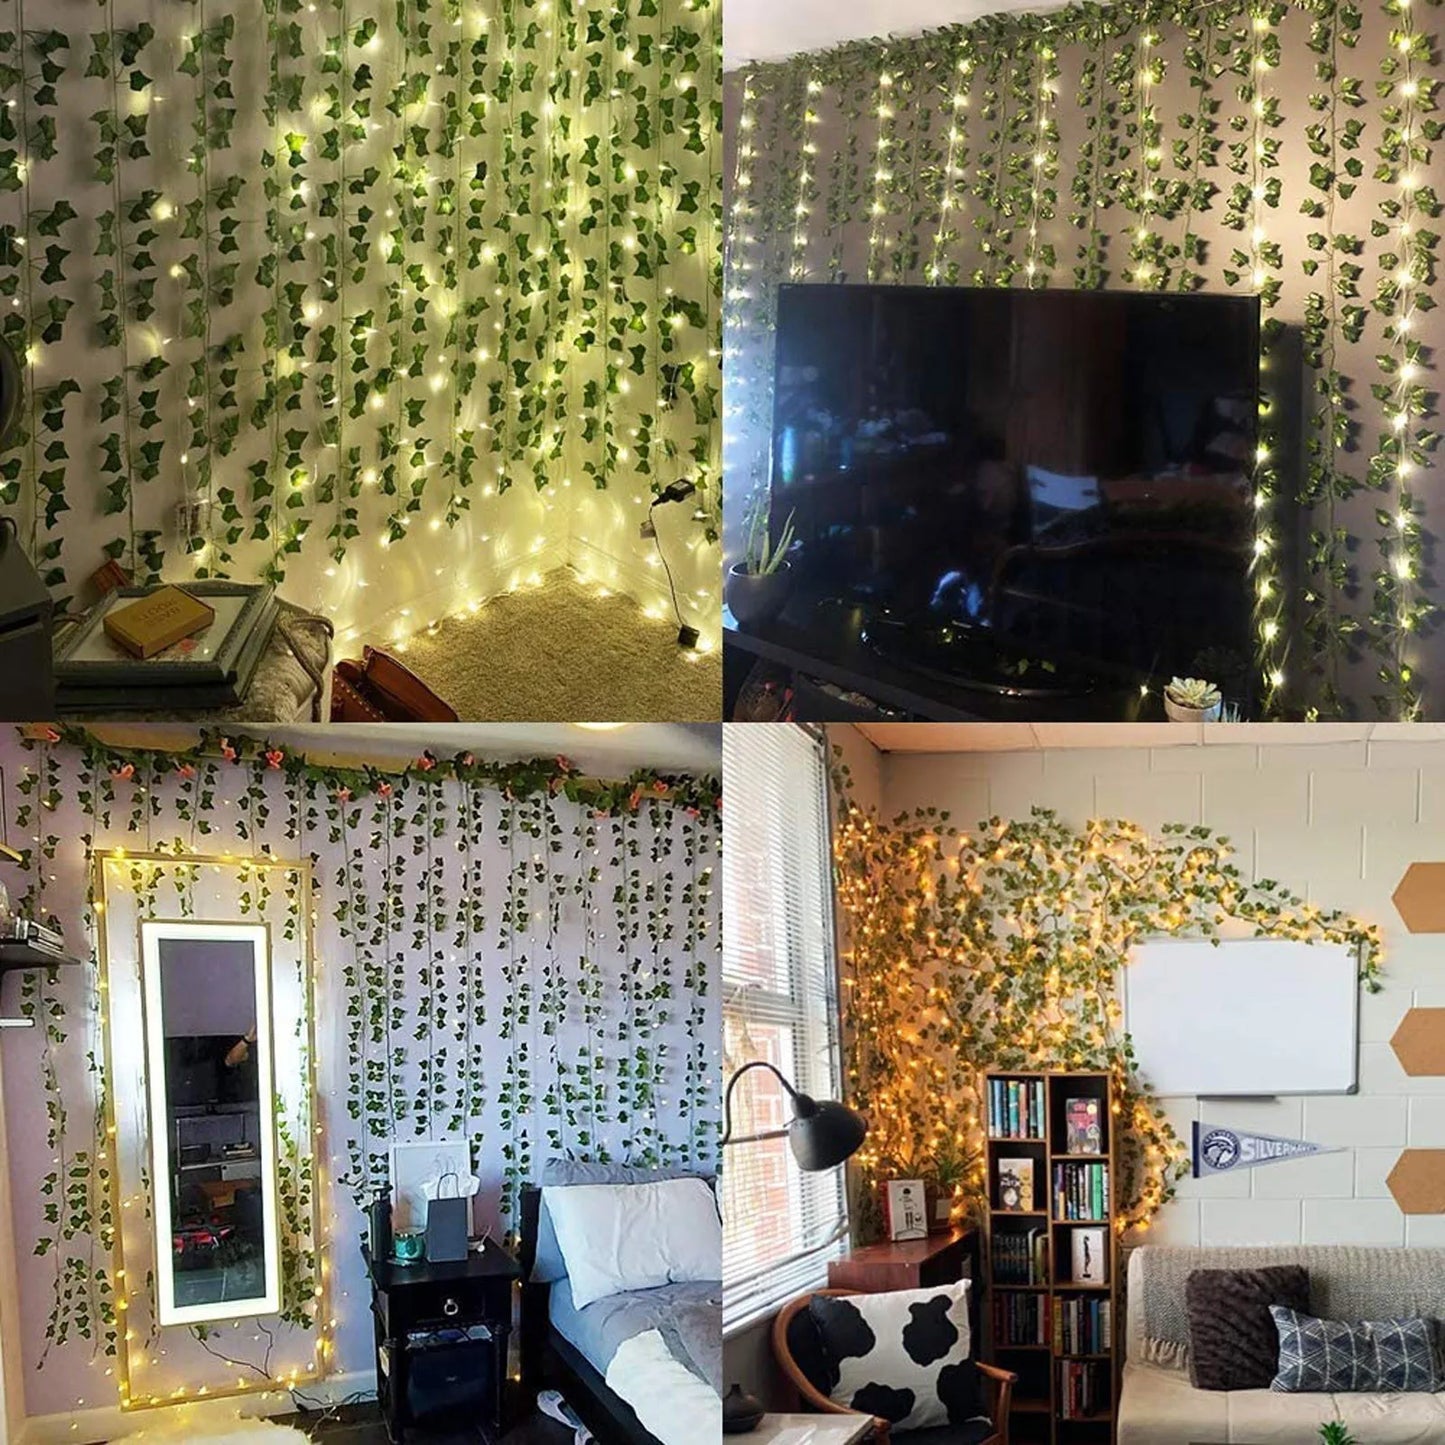 Green Artificial Lvy Leaf Wall Decoration